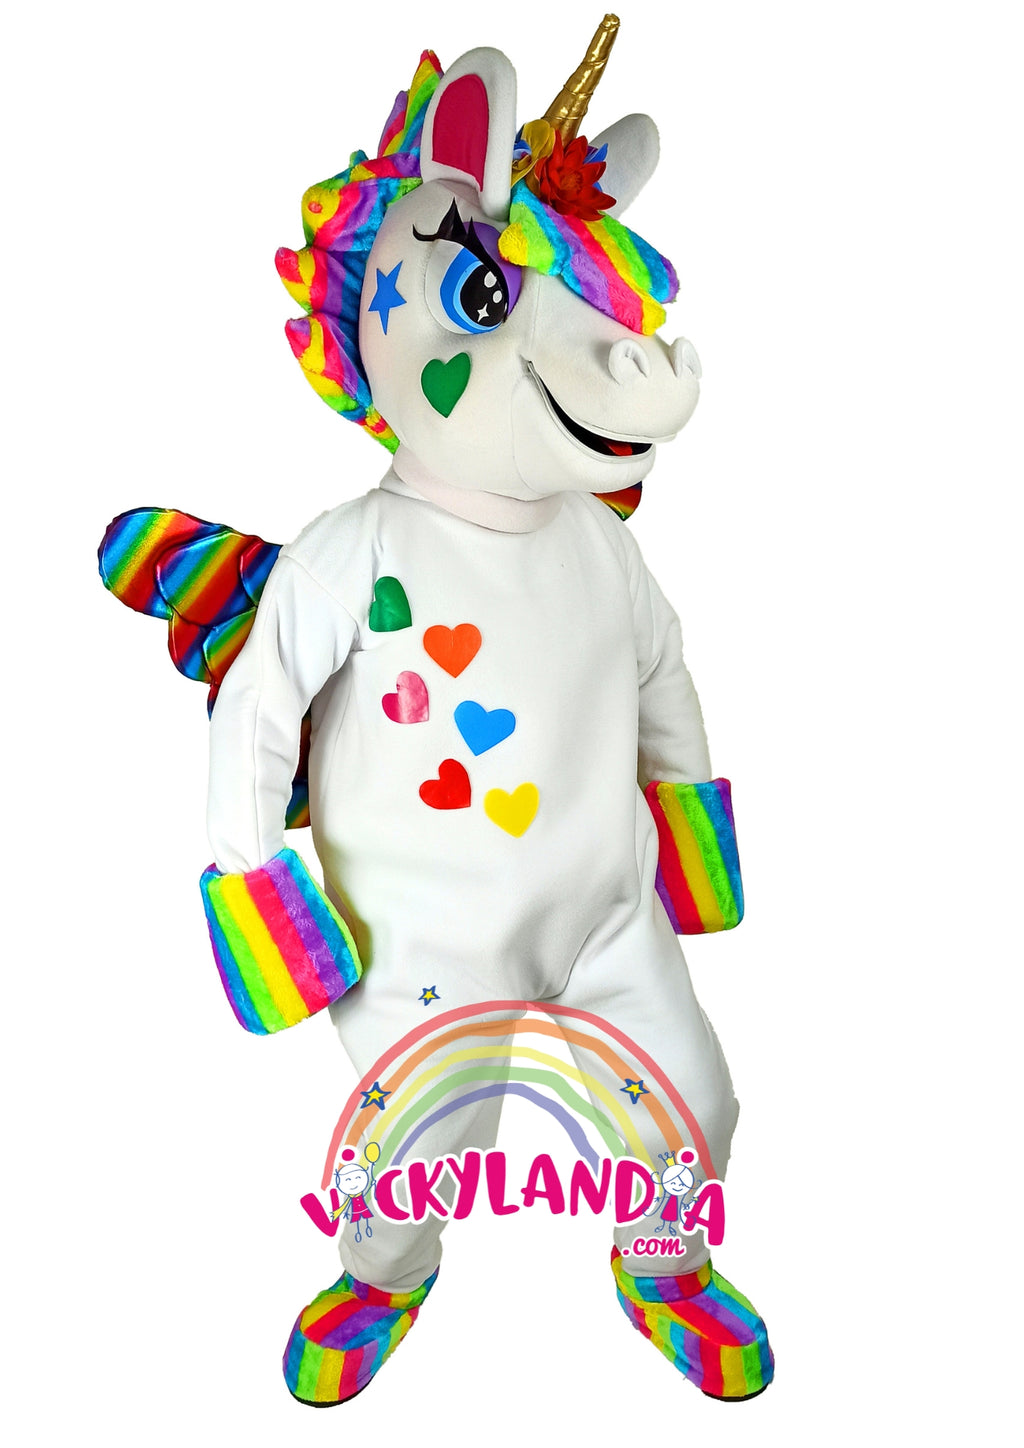 Descubre la magia de nuestro muñeco publicitario de Unicornio Mágico en Vickylandia. Son disfraces cabezones perfectos para fiestas infantiles, shows, cumpleaños, estrategias publicitarias, espectáculos, cabalgatas y cualquier tipo de evento.